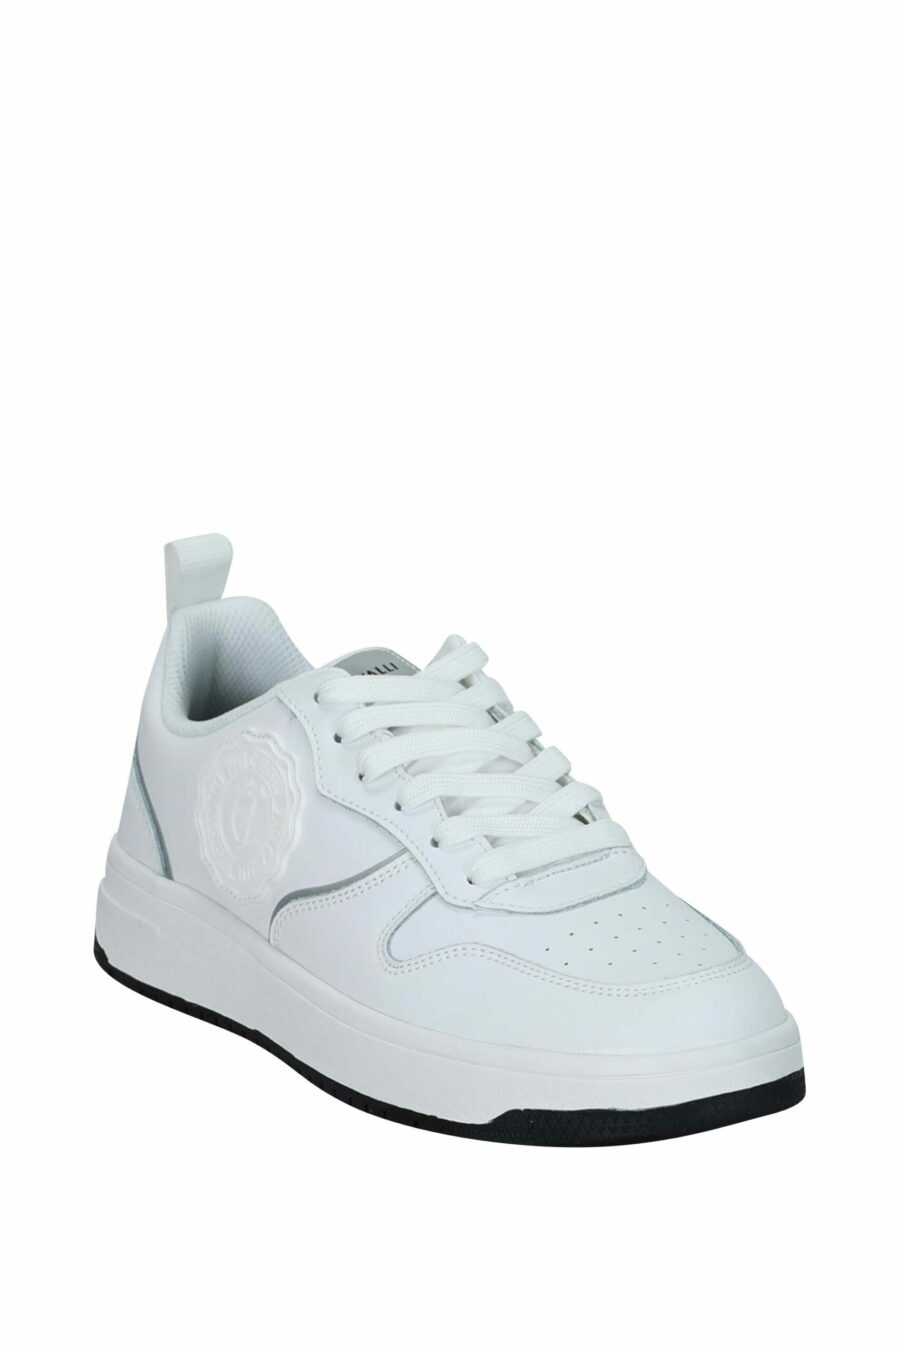 Zapatillas blancas con minilogo circular "c" monocromático - 8052672739735 1 scaled